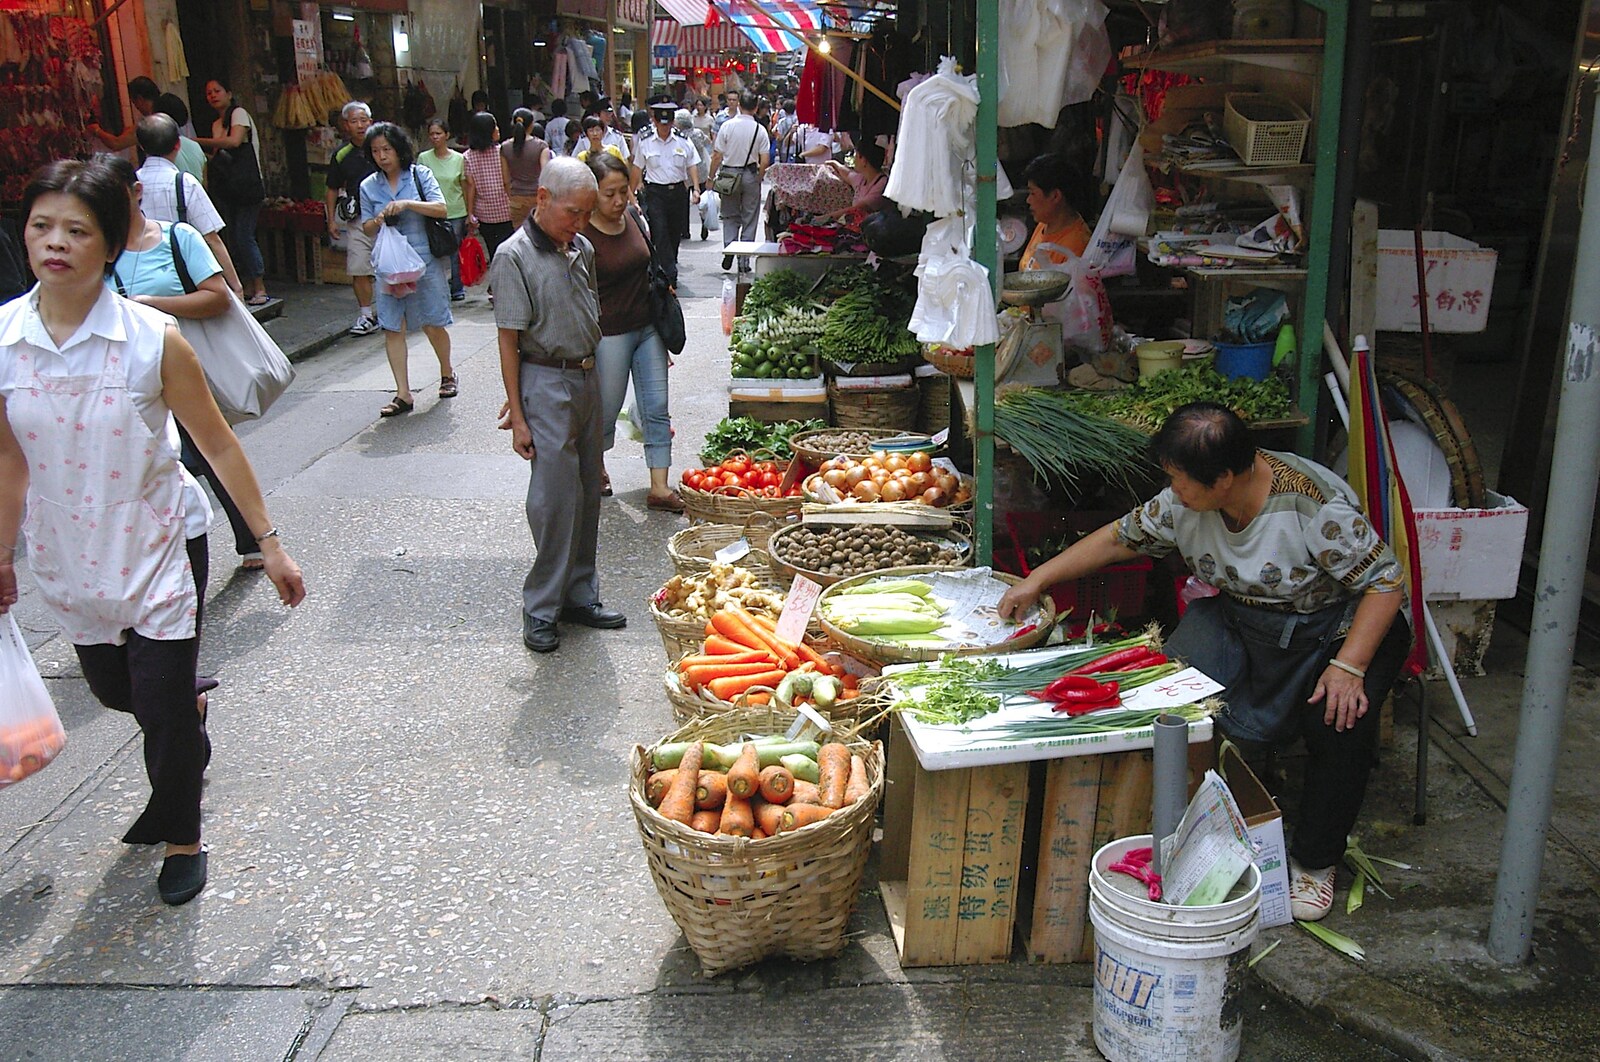 Carrots in a basket from Lan Kwai Fong Market, Hong Kong, China - 4th October 2006